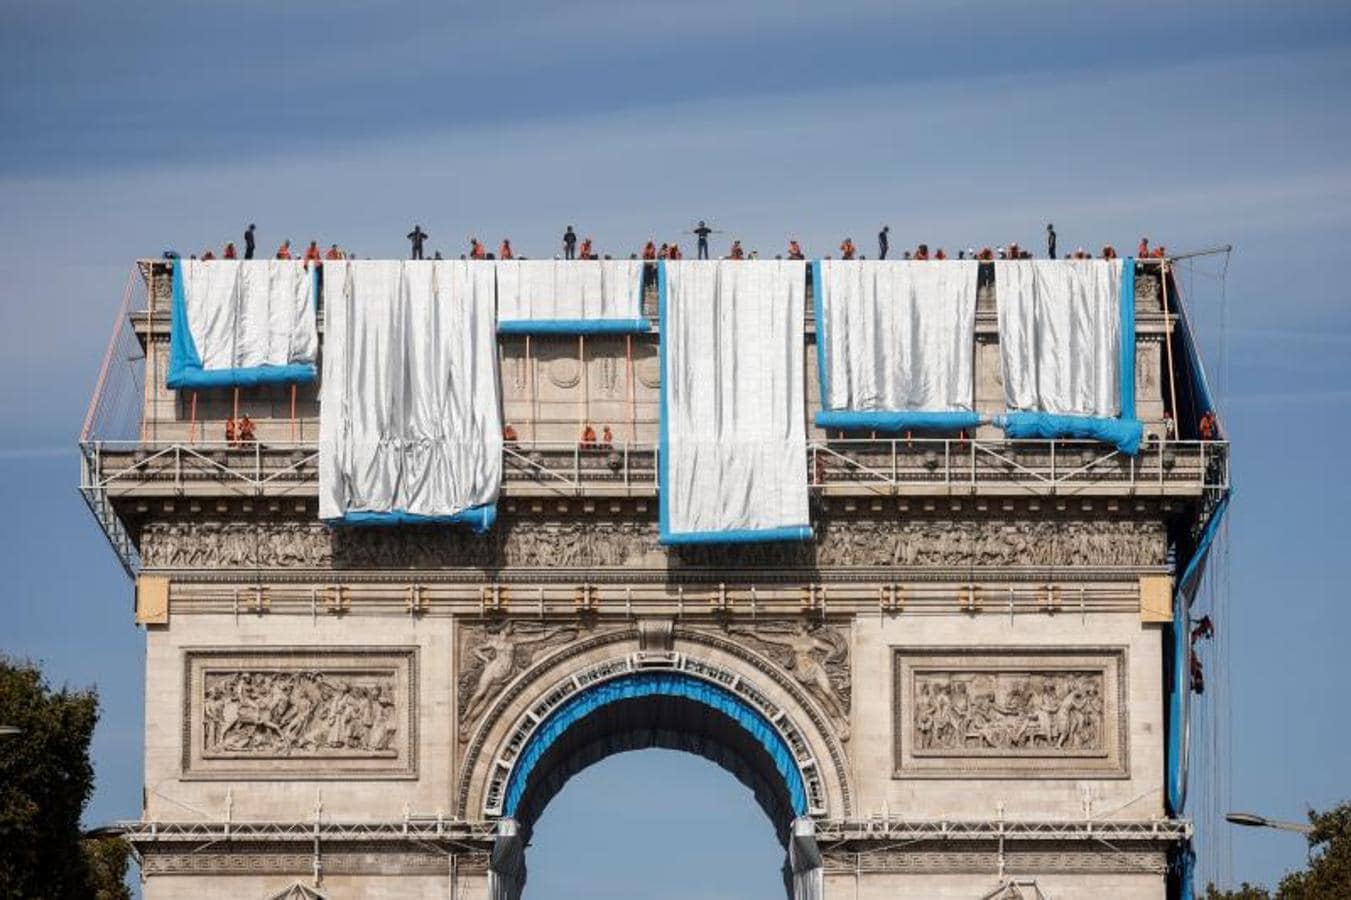 Jeanne-Claude murió cuando la pareja trabajaba en su proyecto último: empaquetar el Arco del Triunfo, construido a mayor gloria de Napoleón Bonaparte y la historia militar de Francia. Su compañero, Christo, murió hace poco más de un año, cuando ese proyecto entraba en su fase final. 